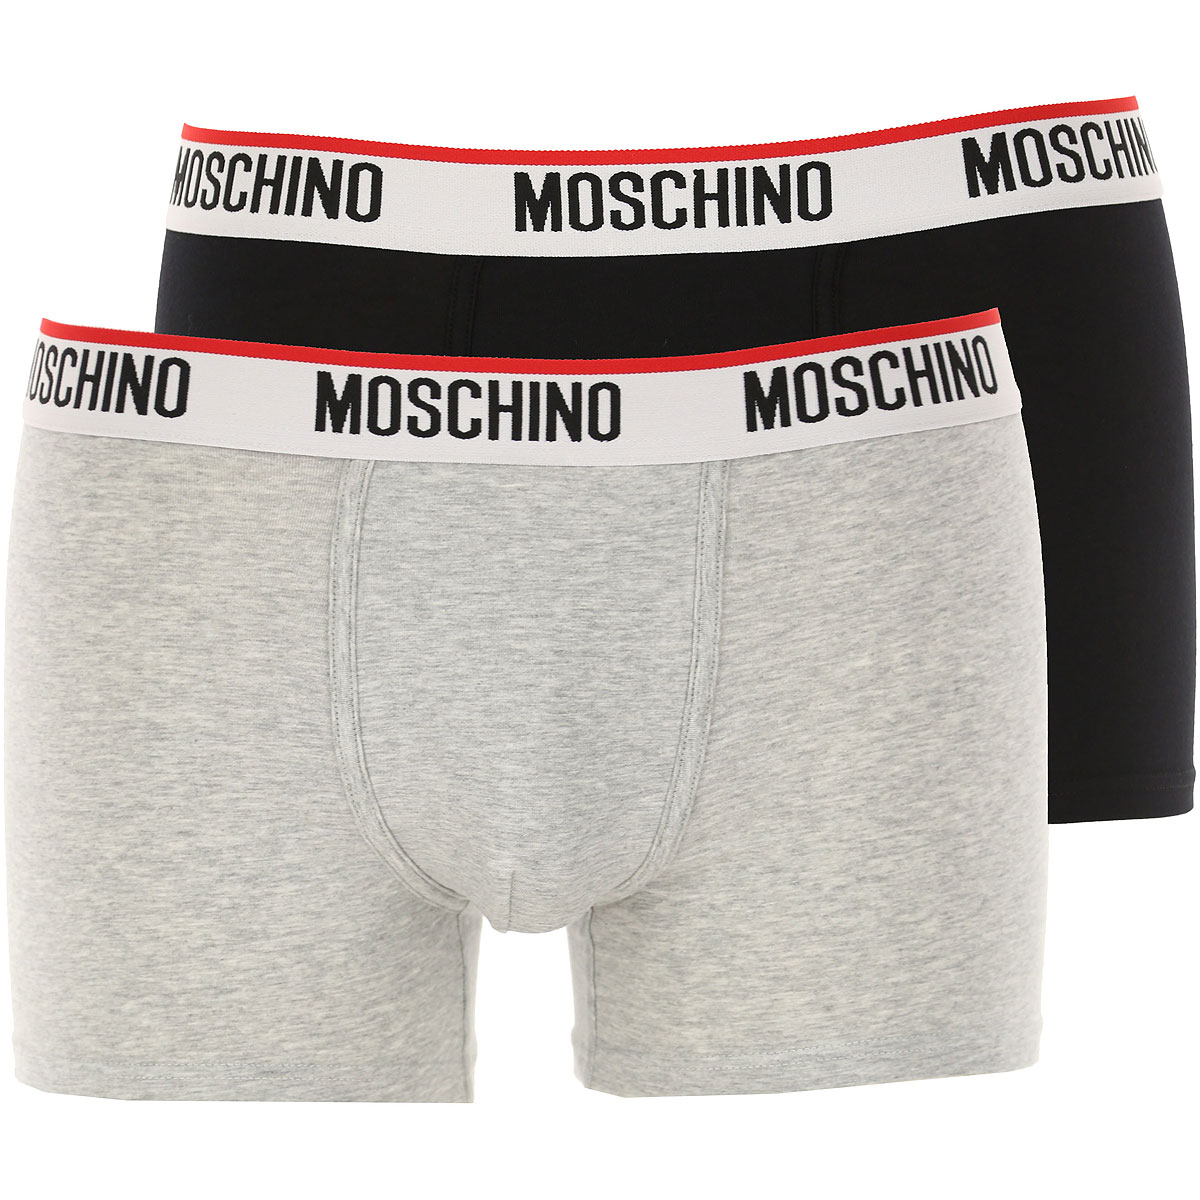 Moschino Boxer Shorts für Herren, Unterhose, Short, Boxer Günstig im Sale, Bi Pack, Grau Melange, Baumwolle, 2017, L XS